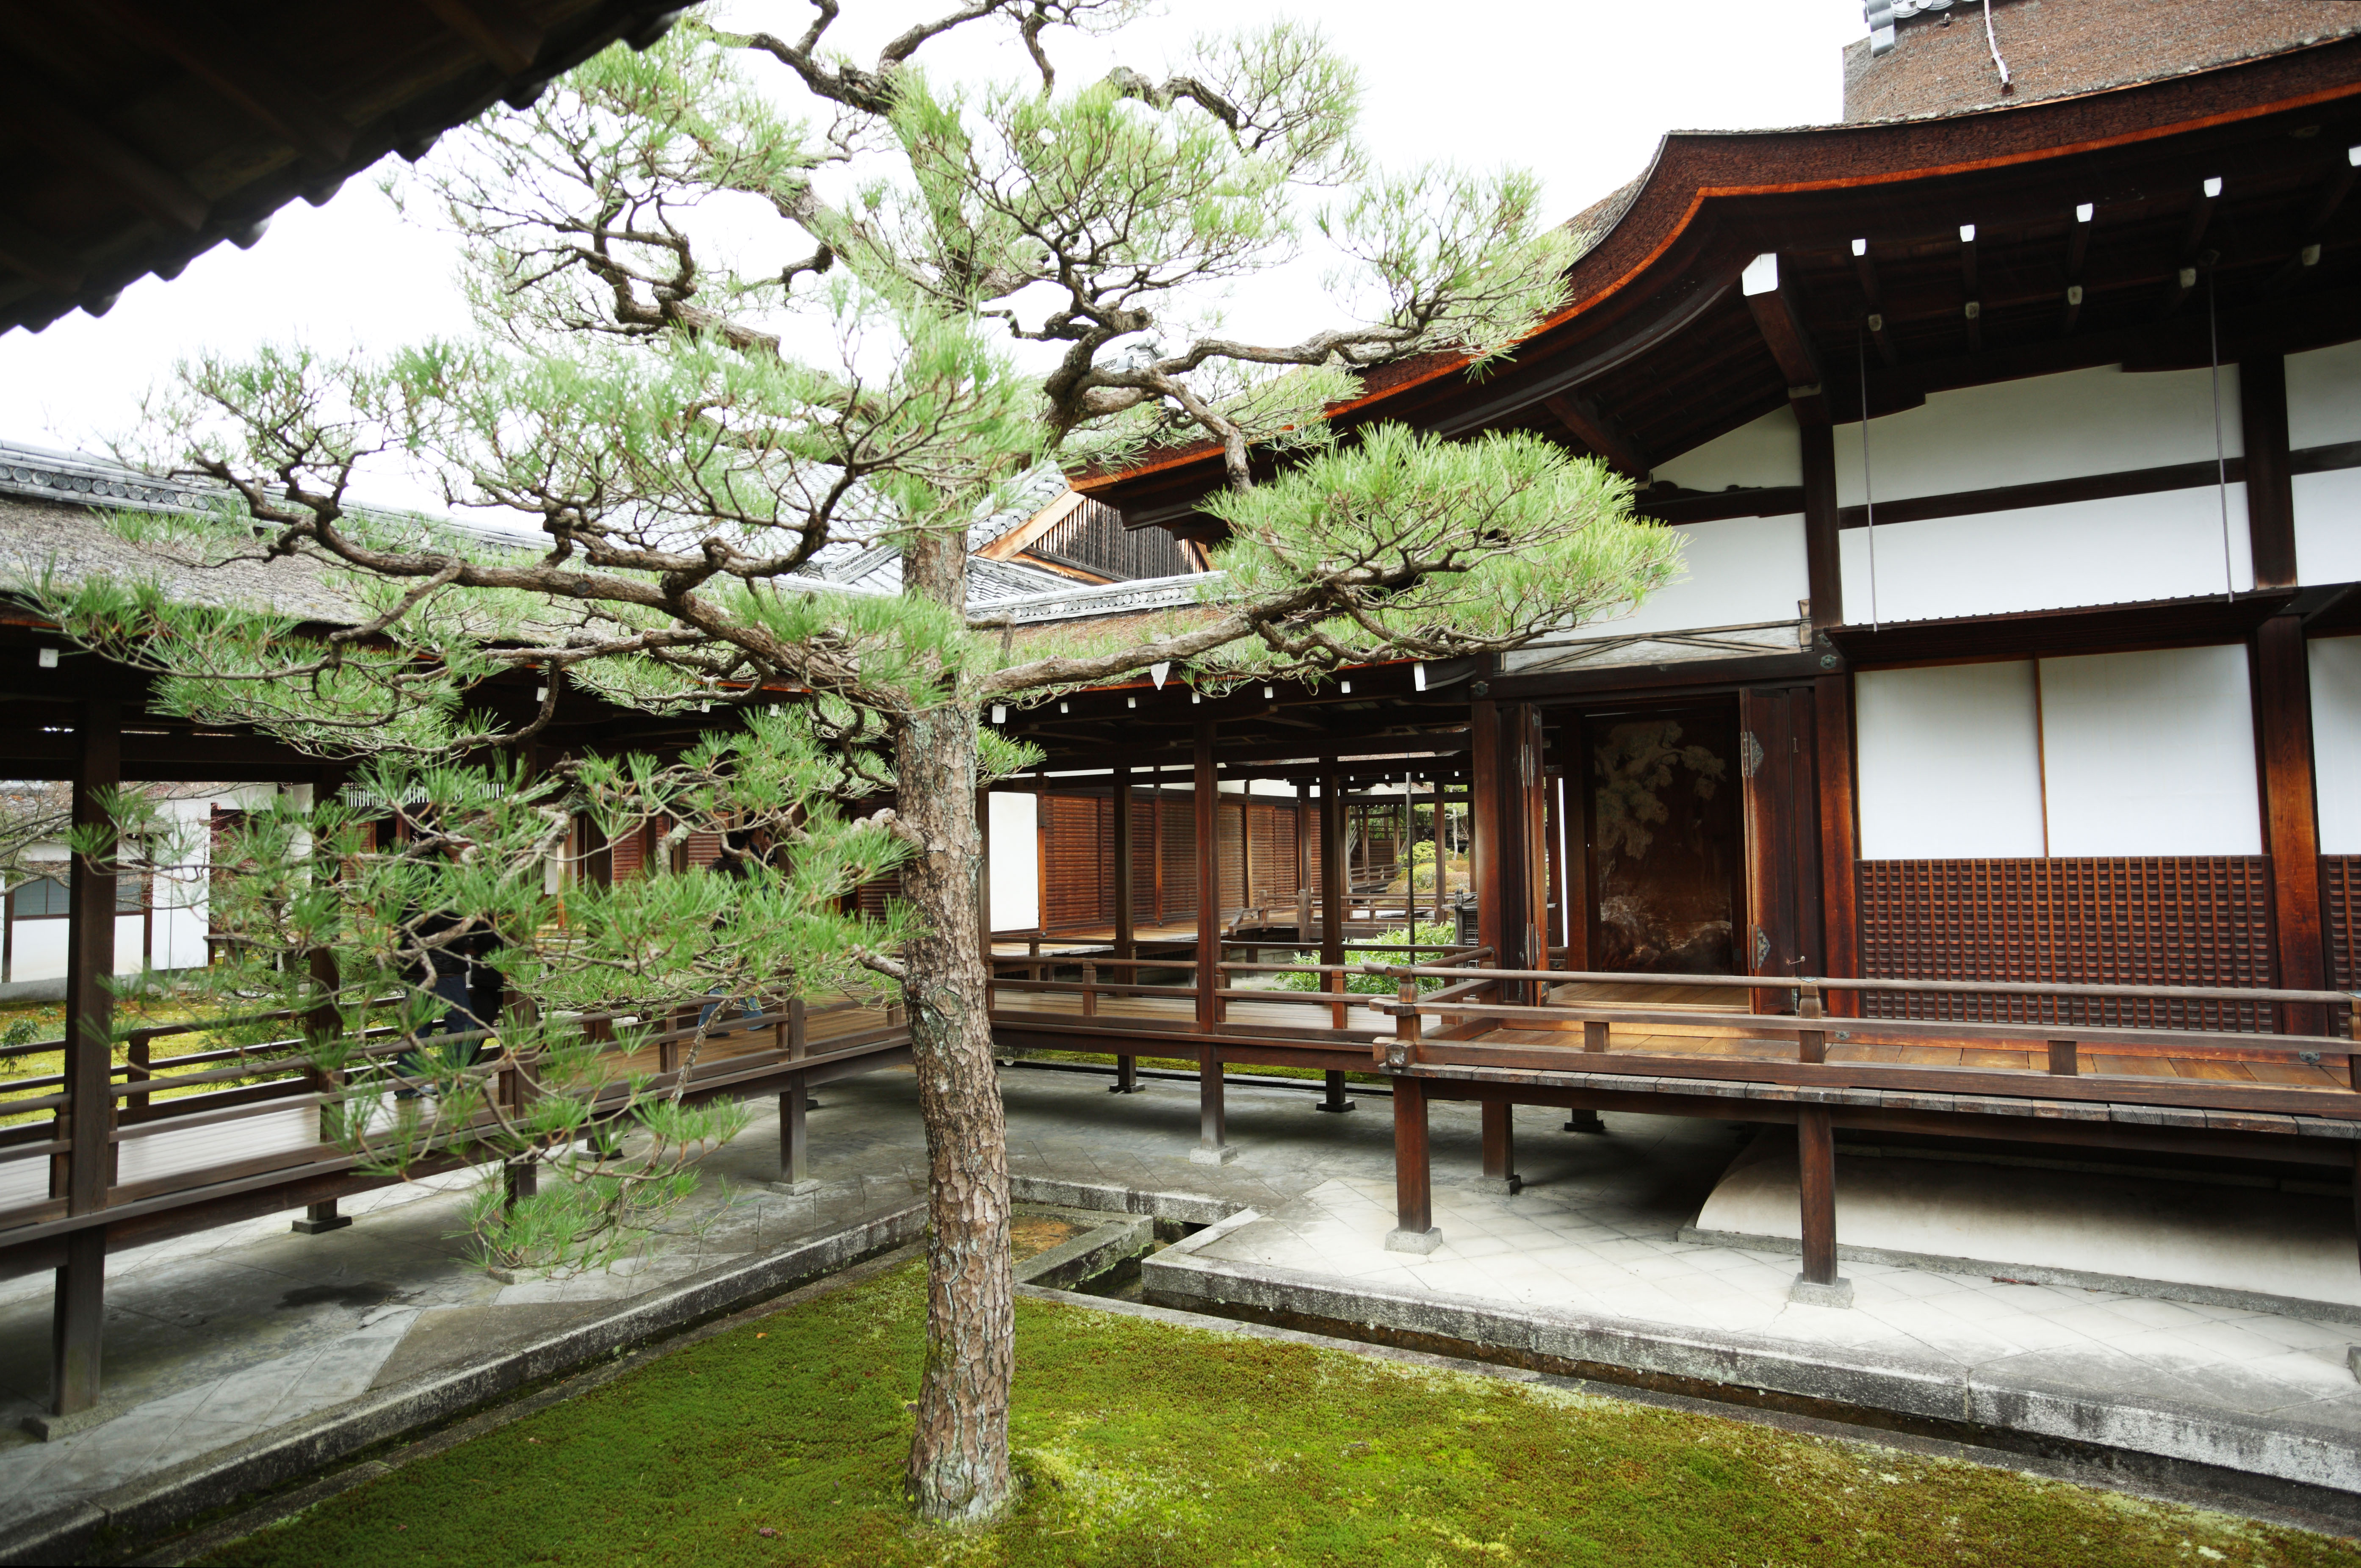 Foto, materiell, befreit, Landschaft, Bild, hat Foto auf Lager,Ninna-ji-Tempel Schienbein-Bau, Kiefer, Japanisch-Stilzimmer, Japanisch-Stilgebude, bedachter Durchgang, der Gebude in Verbindung bringt